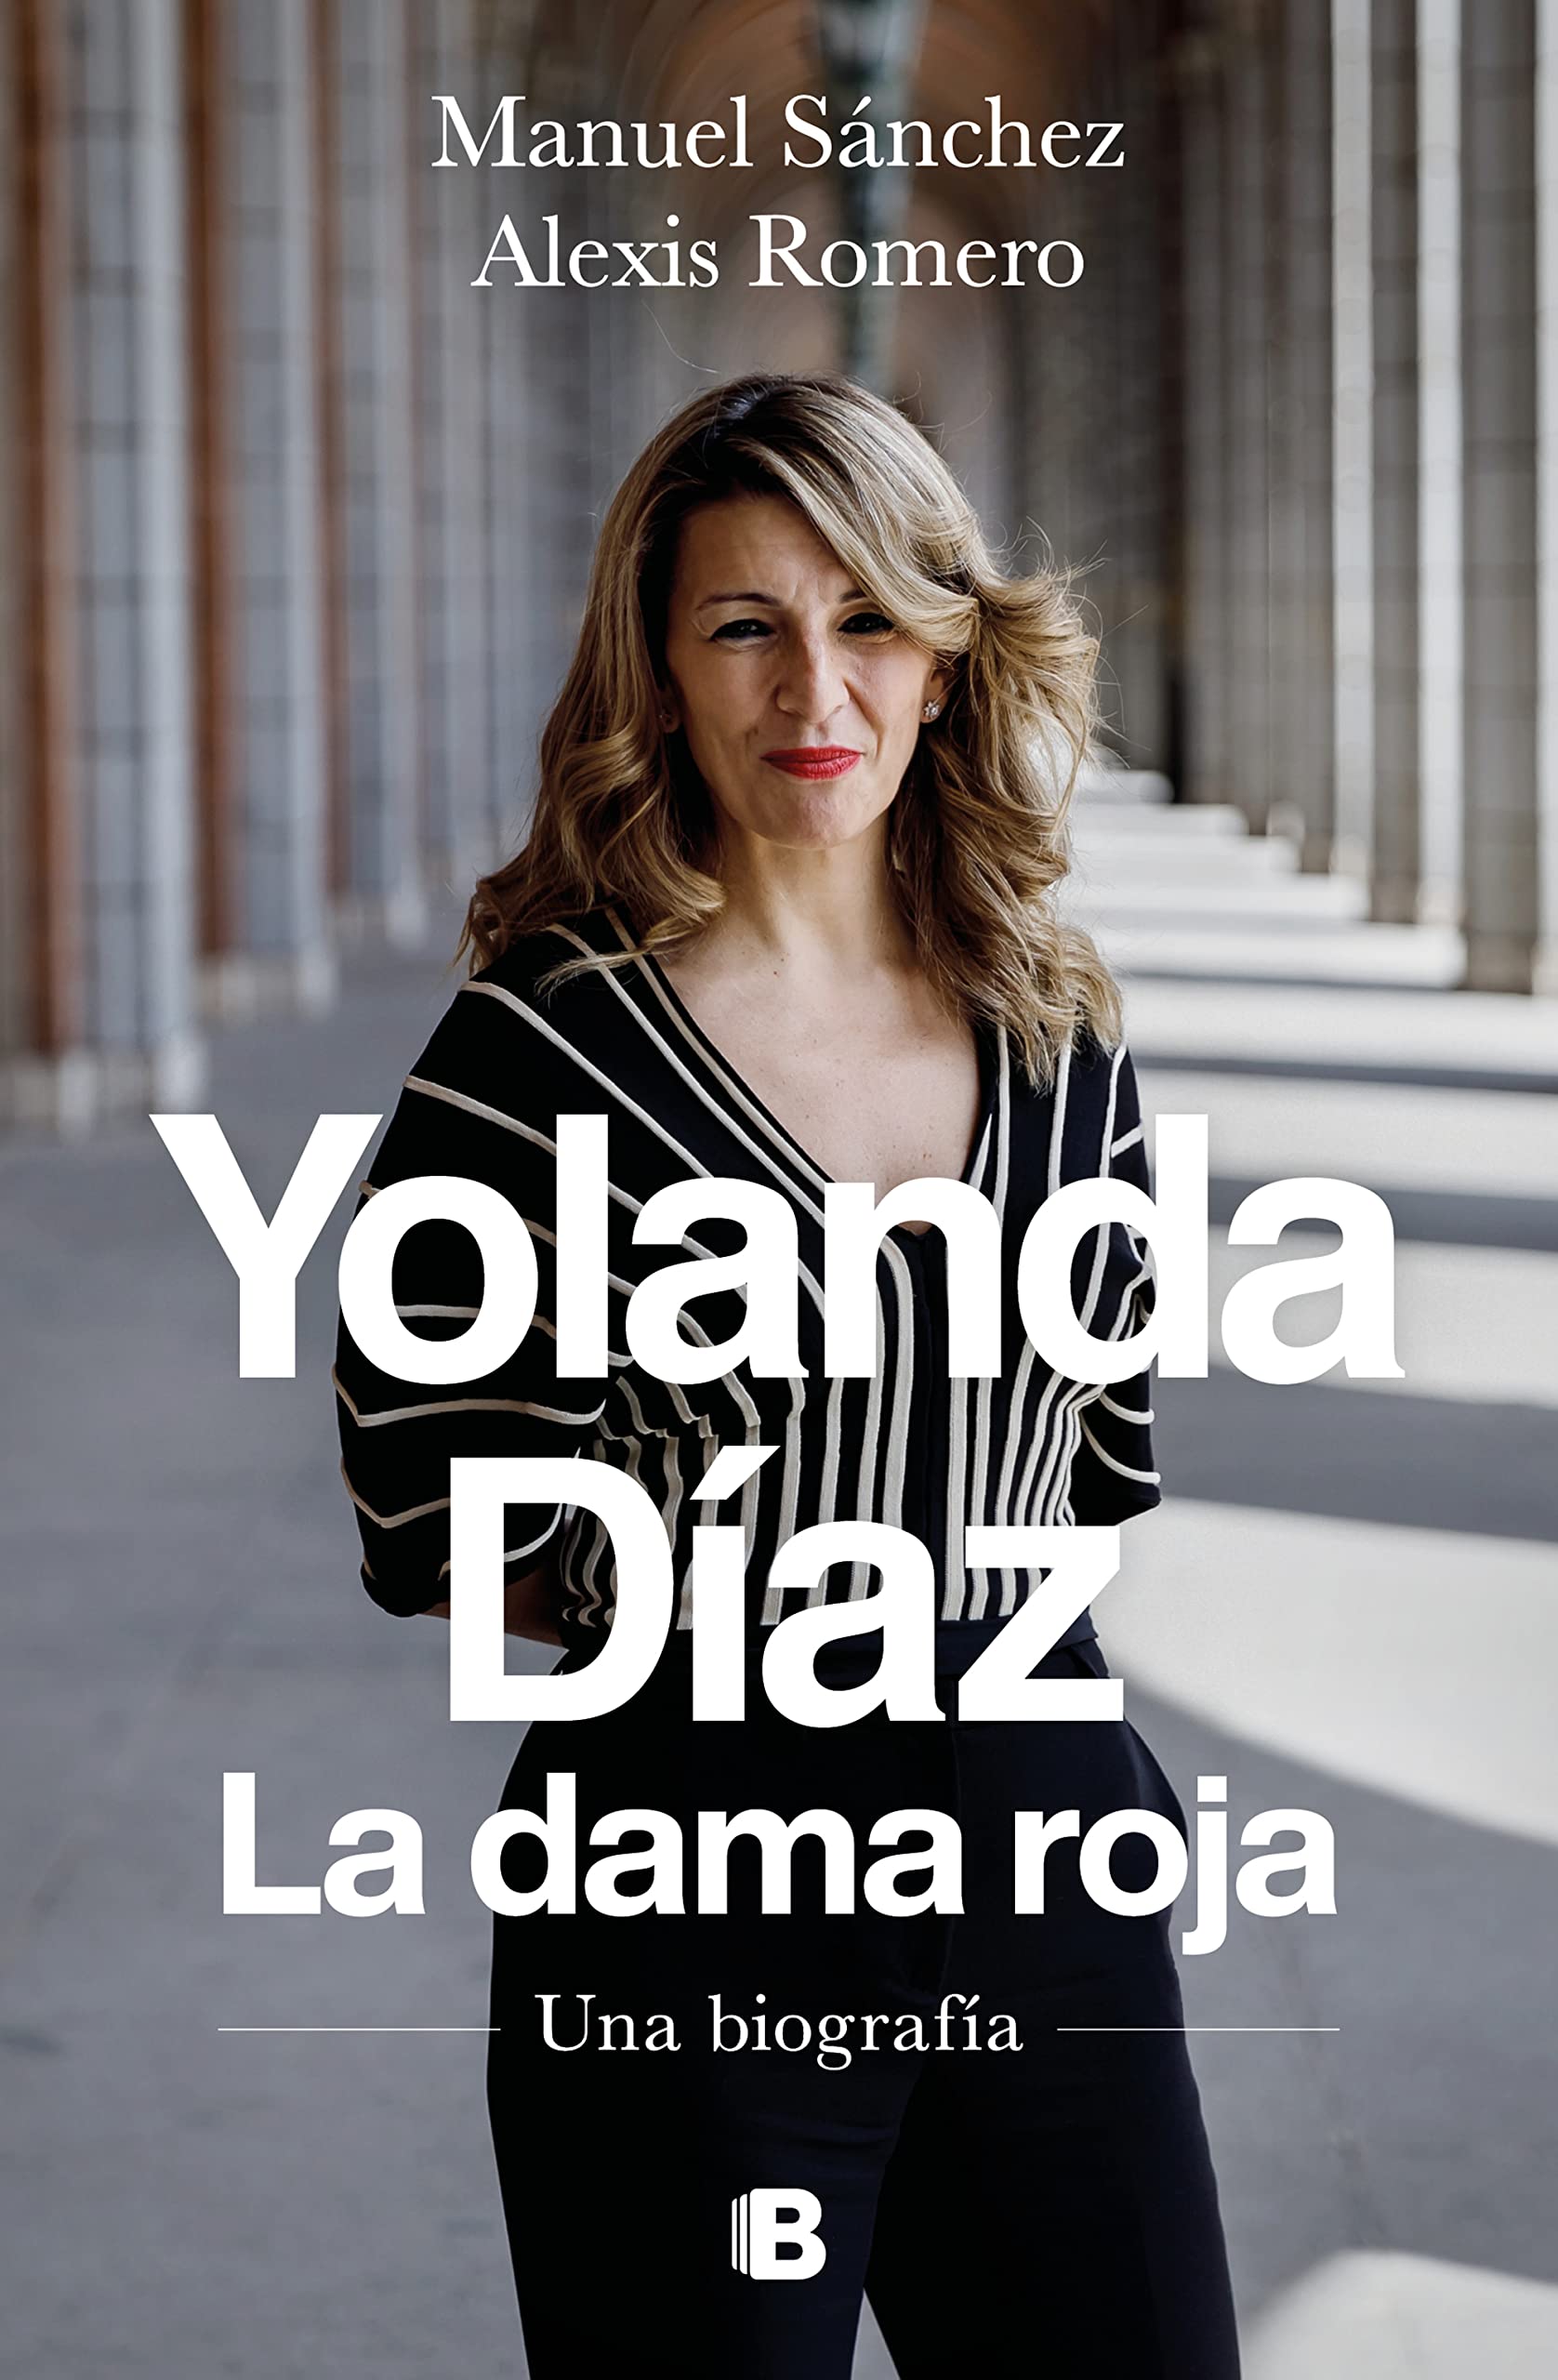 Descargar Yolanda Díaz, la dama roja de Manuel Sanchez en EPUB | PDF | MOBI